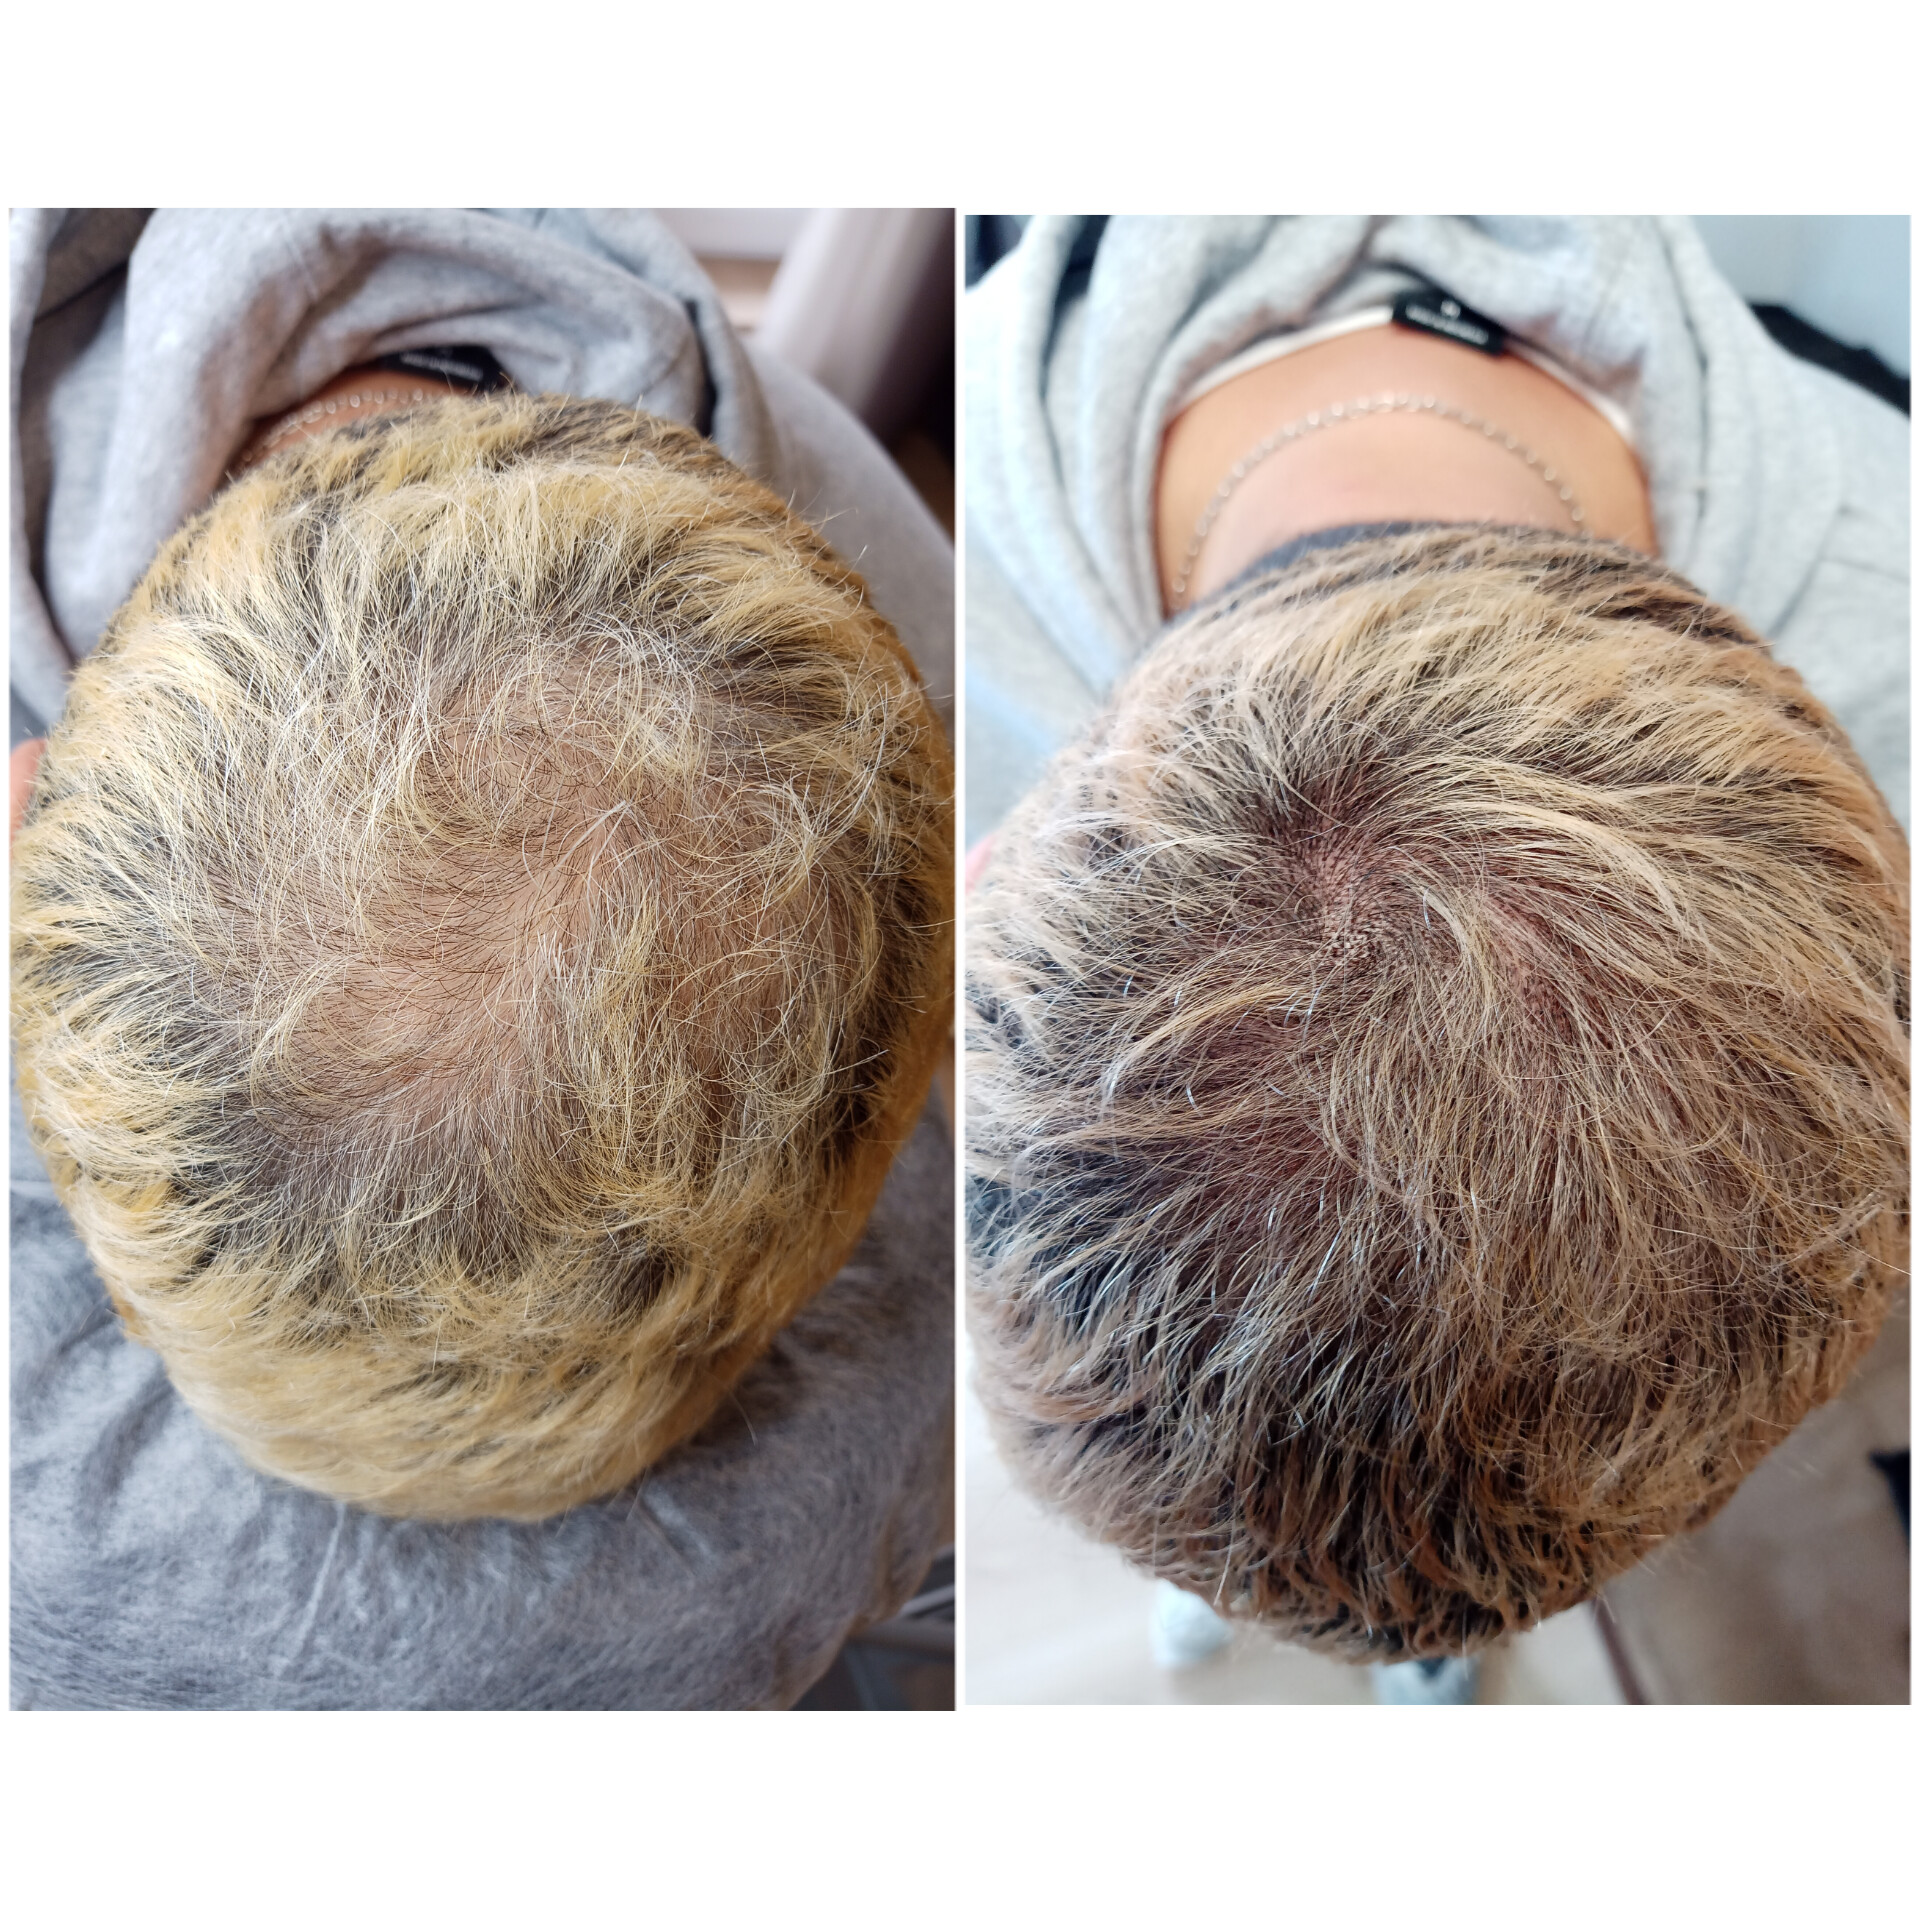 Трихопигментация SPM - Восстановление густоты волос